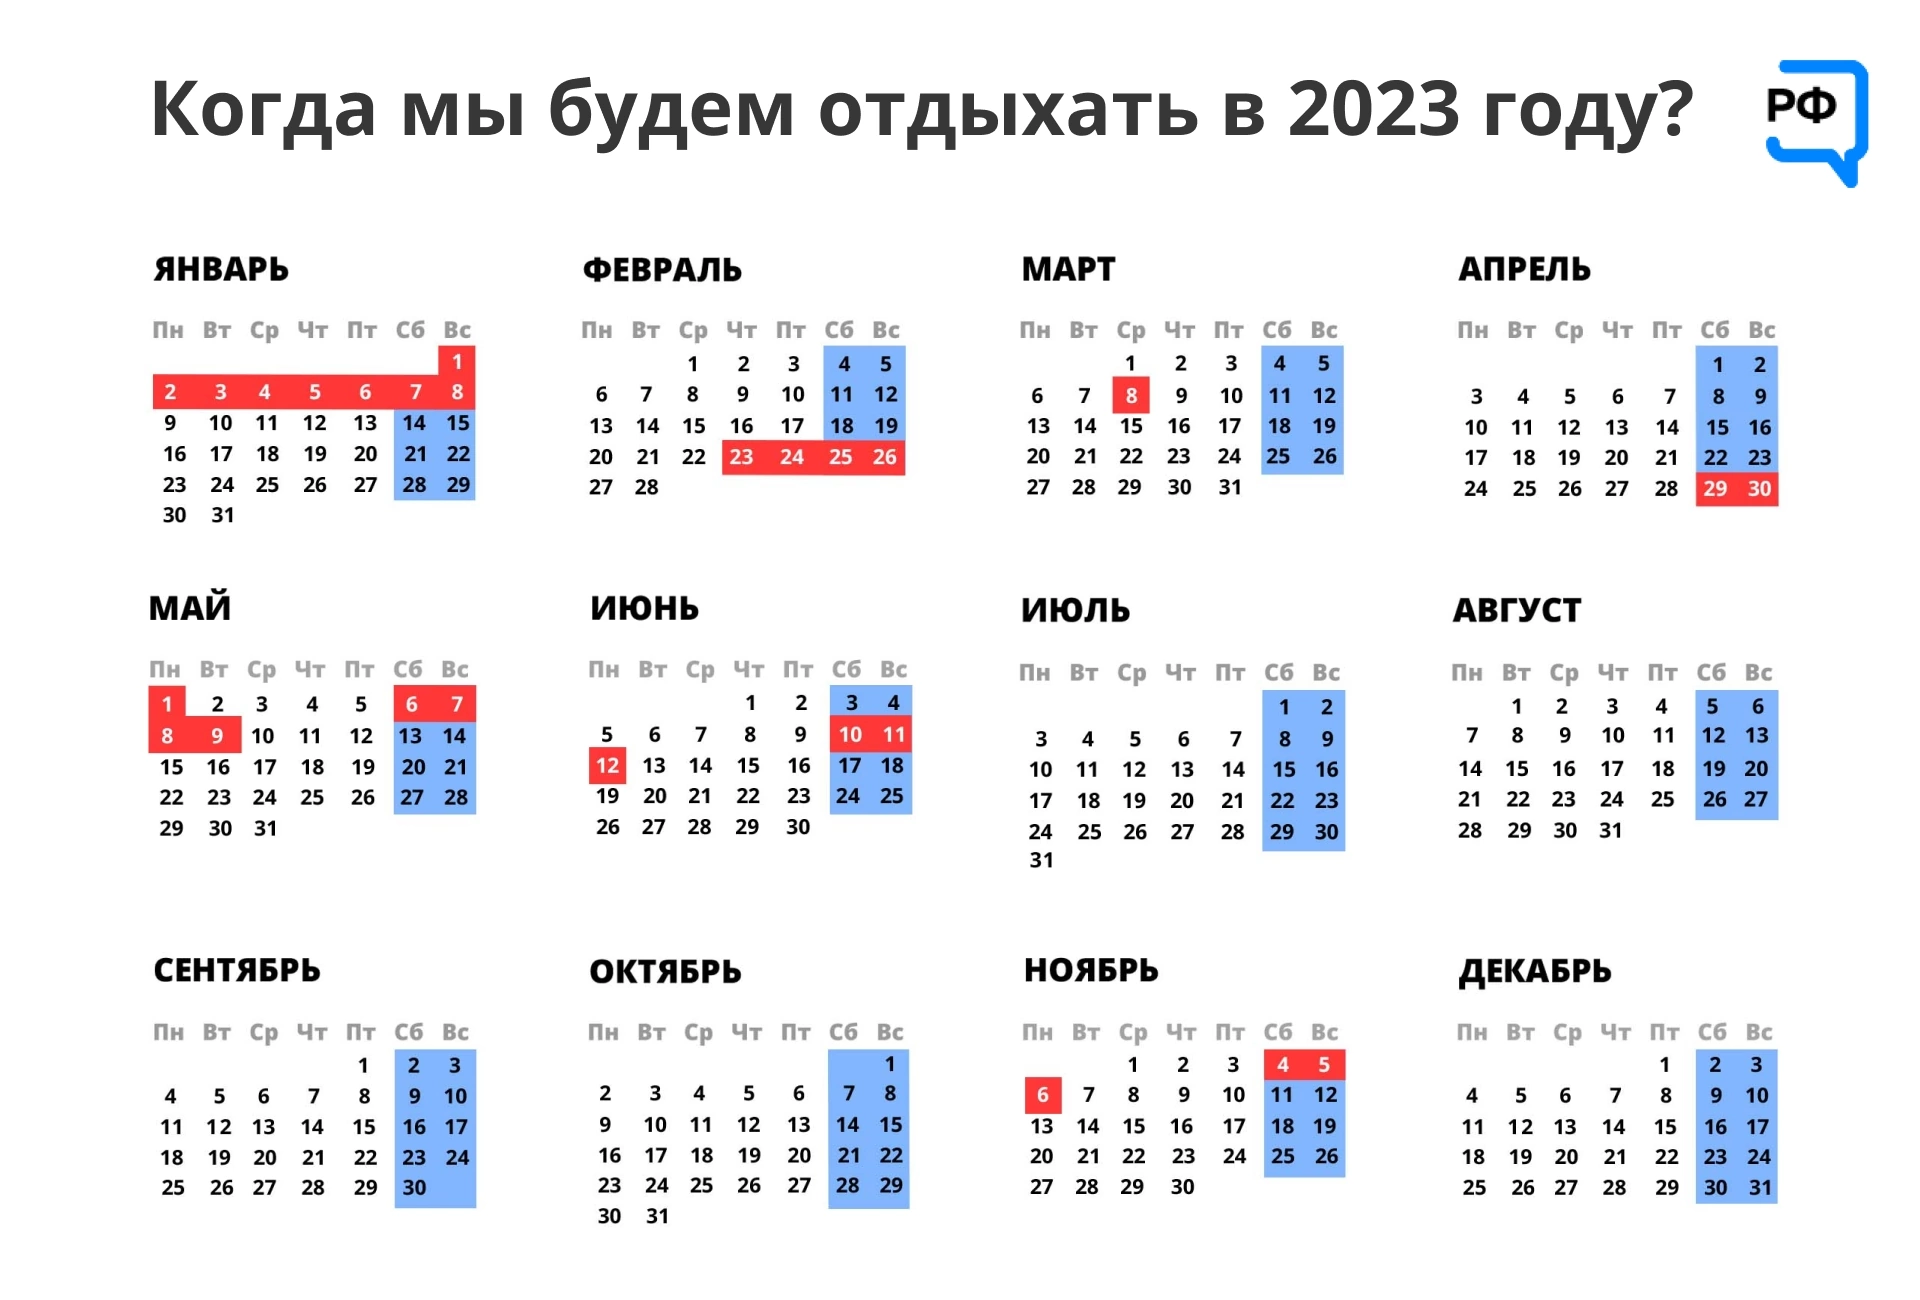 14 декабря выходной день. Выходные и праздничные дни в феврале 2023 года в России. Календарь на 2023 год с праздниками. Календарные праздники на 2023 год. Календарь на 2023 год с праздниками и выходными.